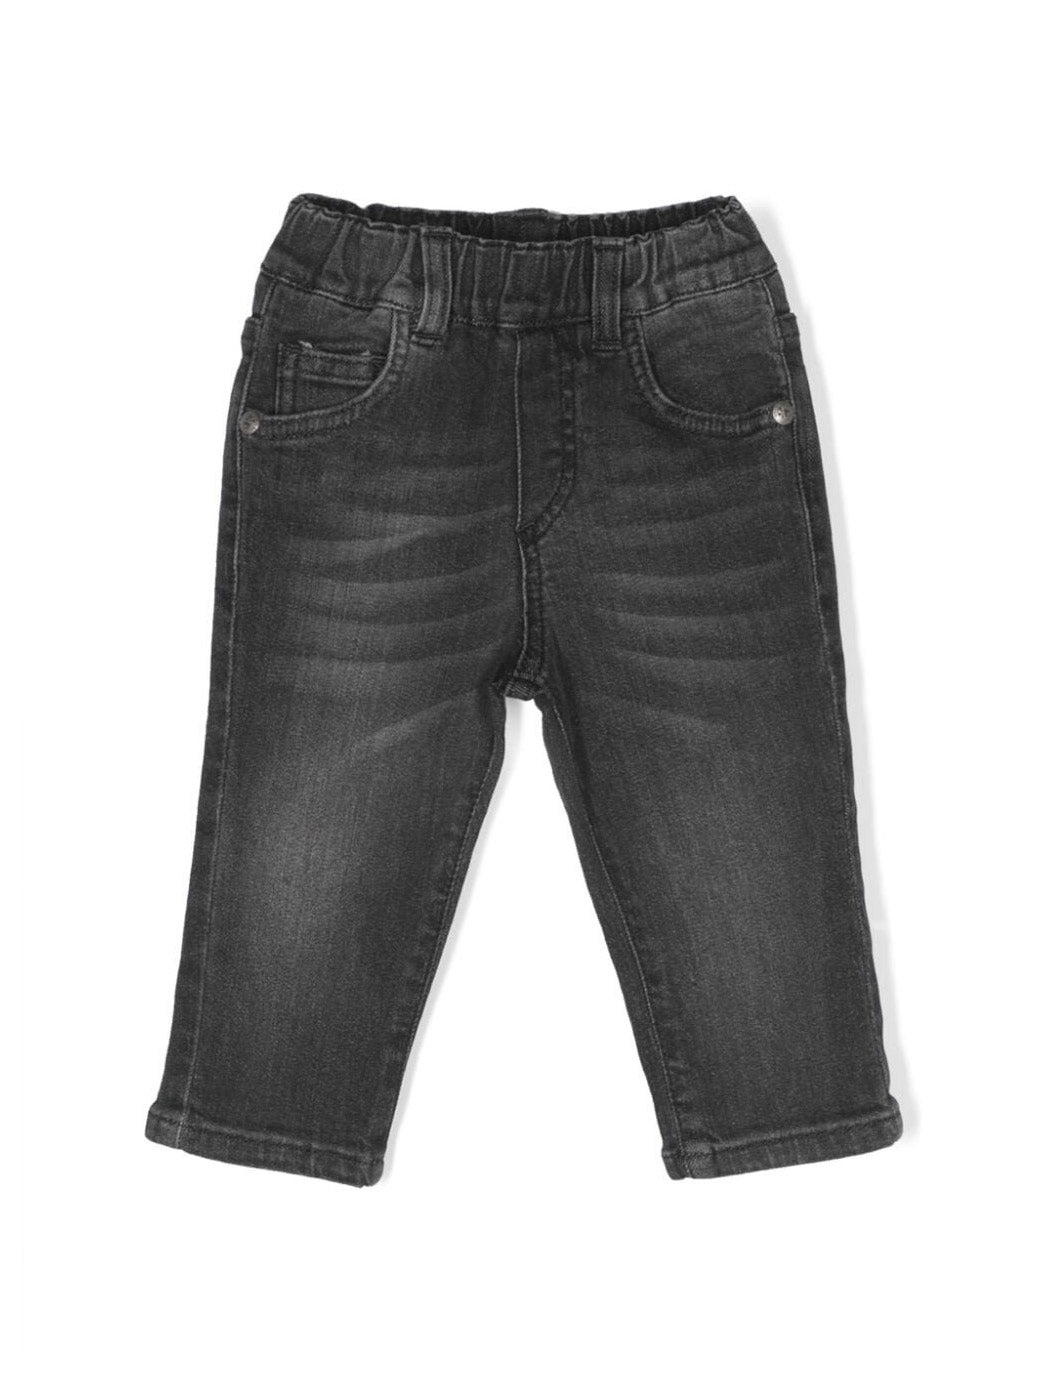 JOHN RICHMOND-Baby boy's jeans pants - RIA23085JE Black